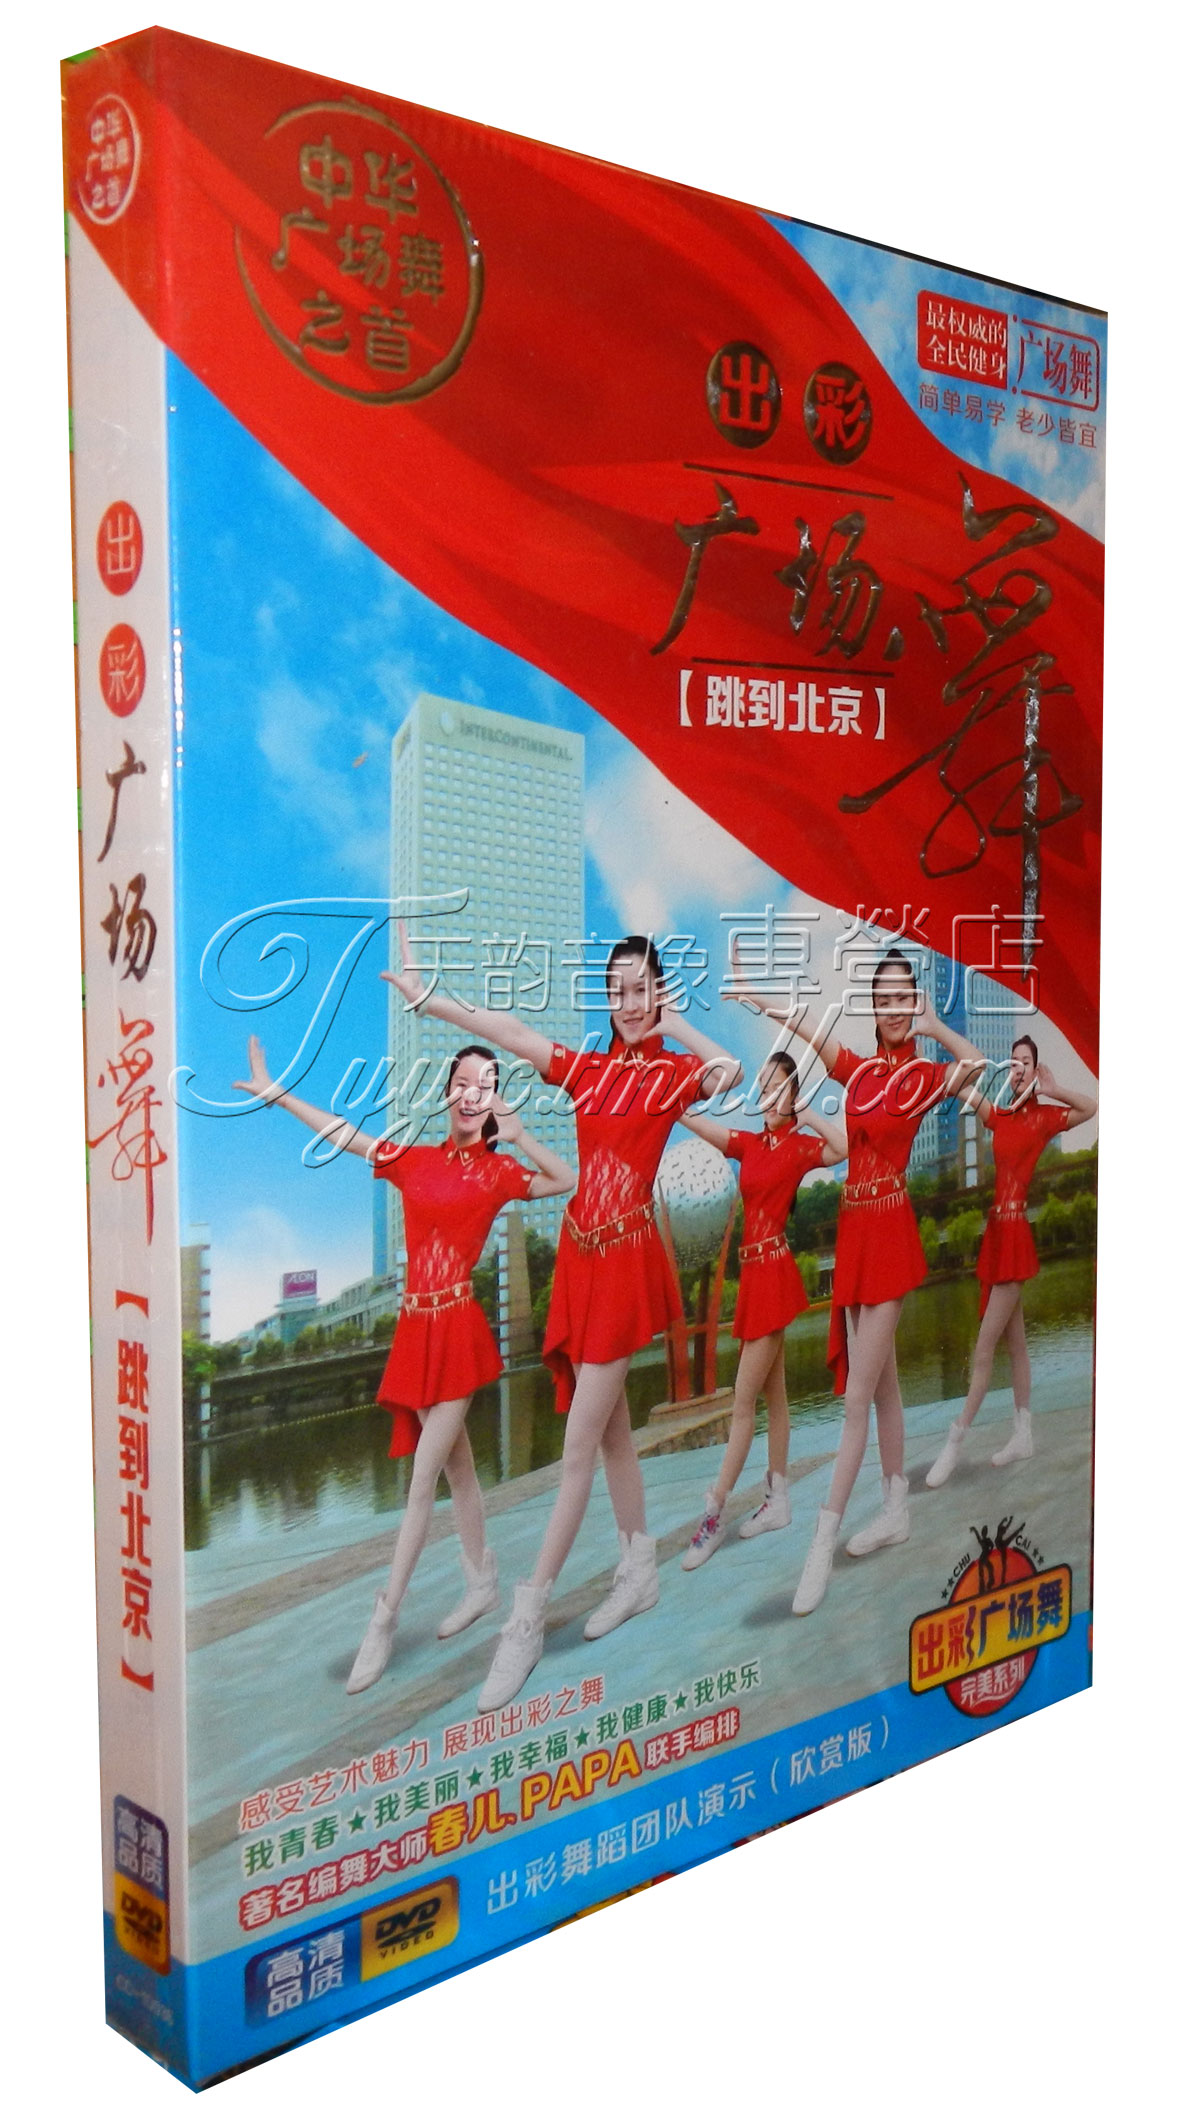 正版中老年健身舞蹈教程 出彩广场舞 教学视频dvd光盘 跳到北京